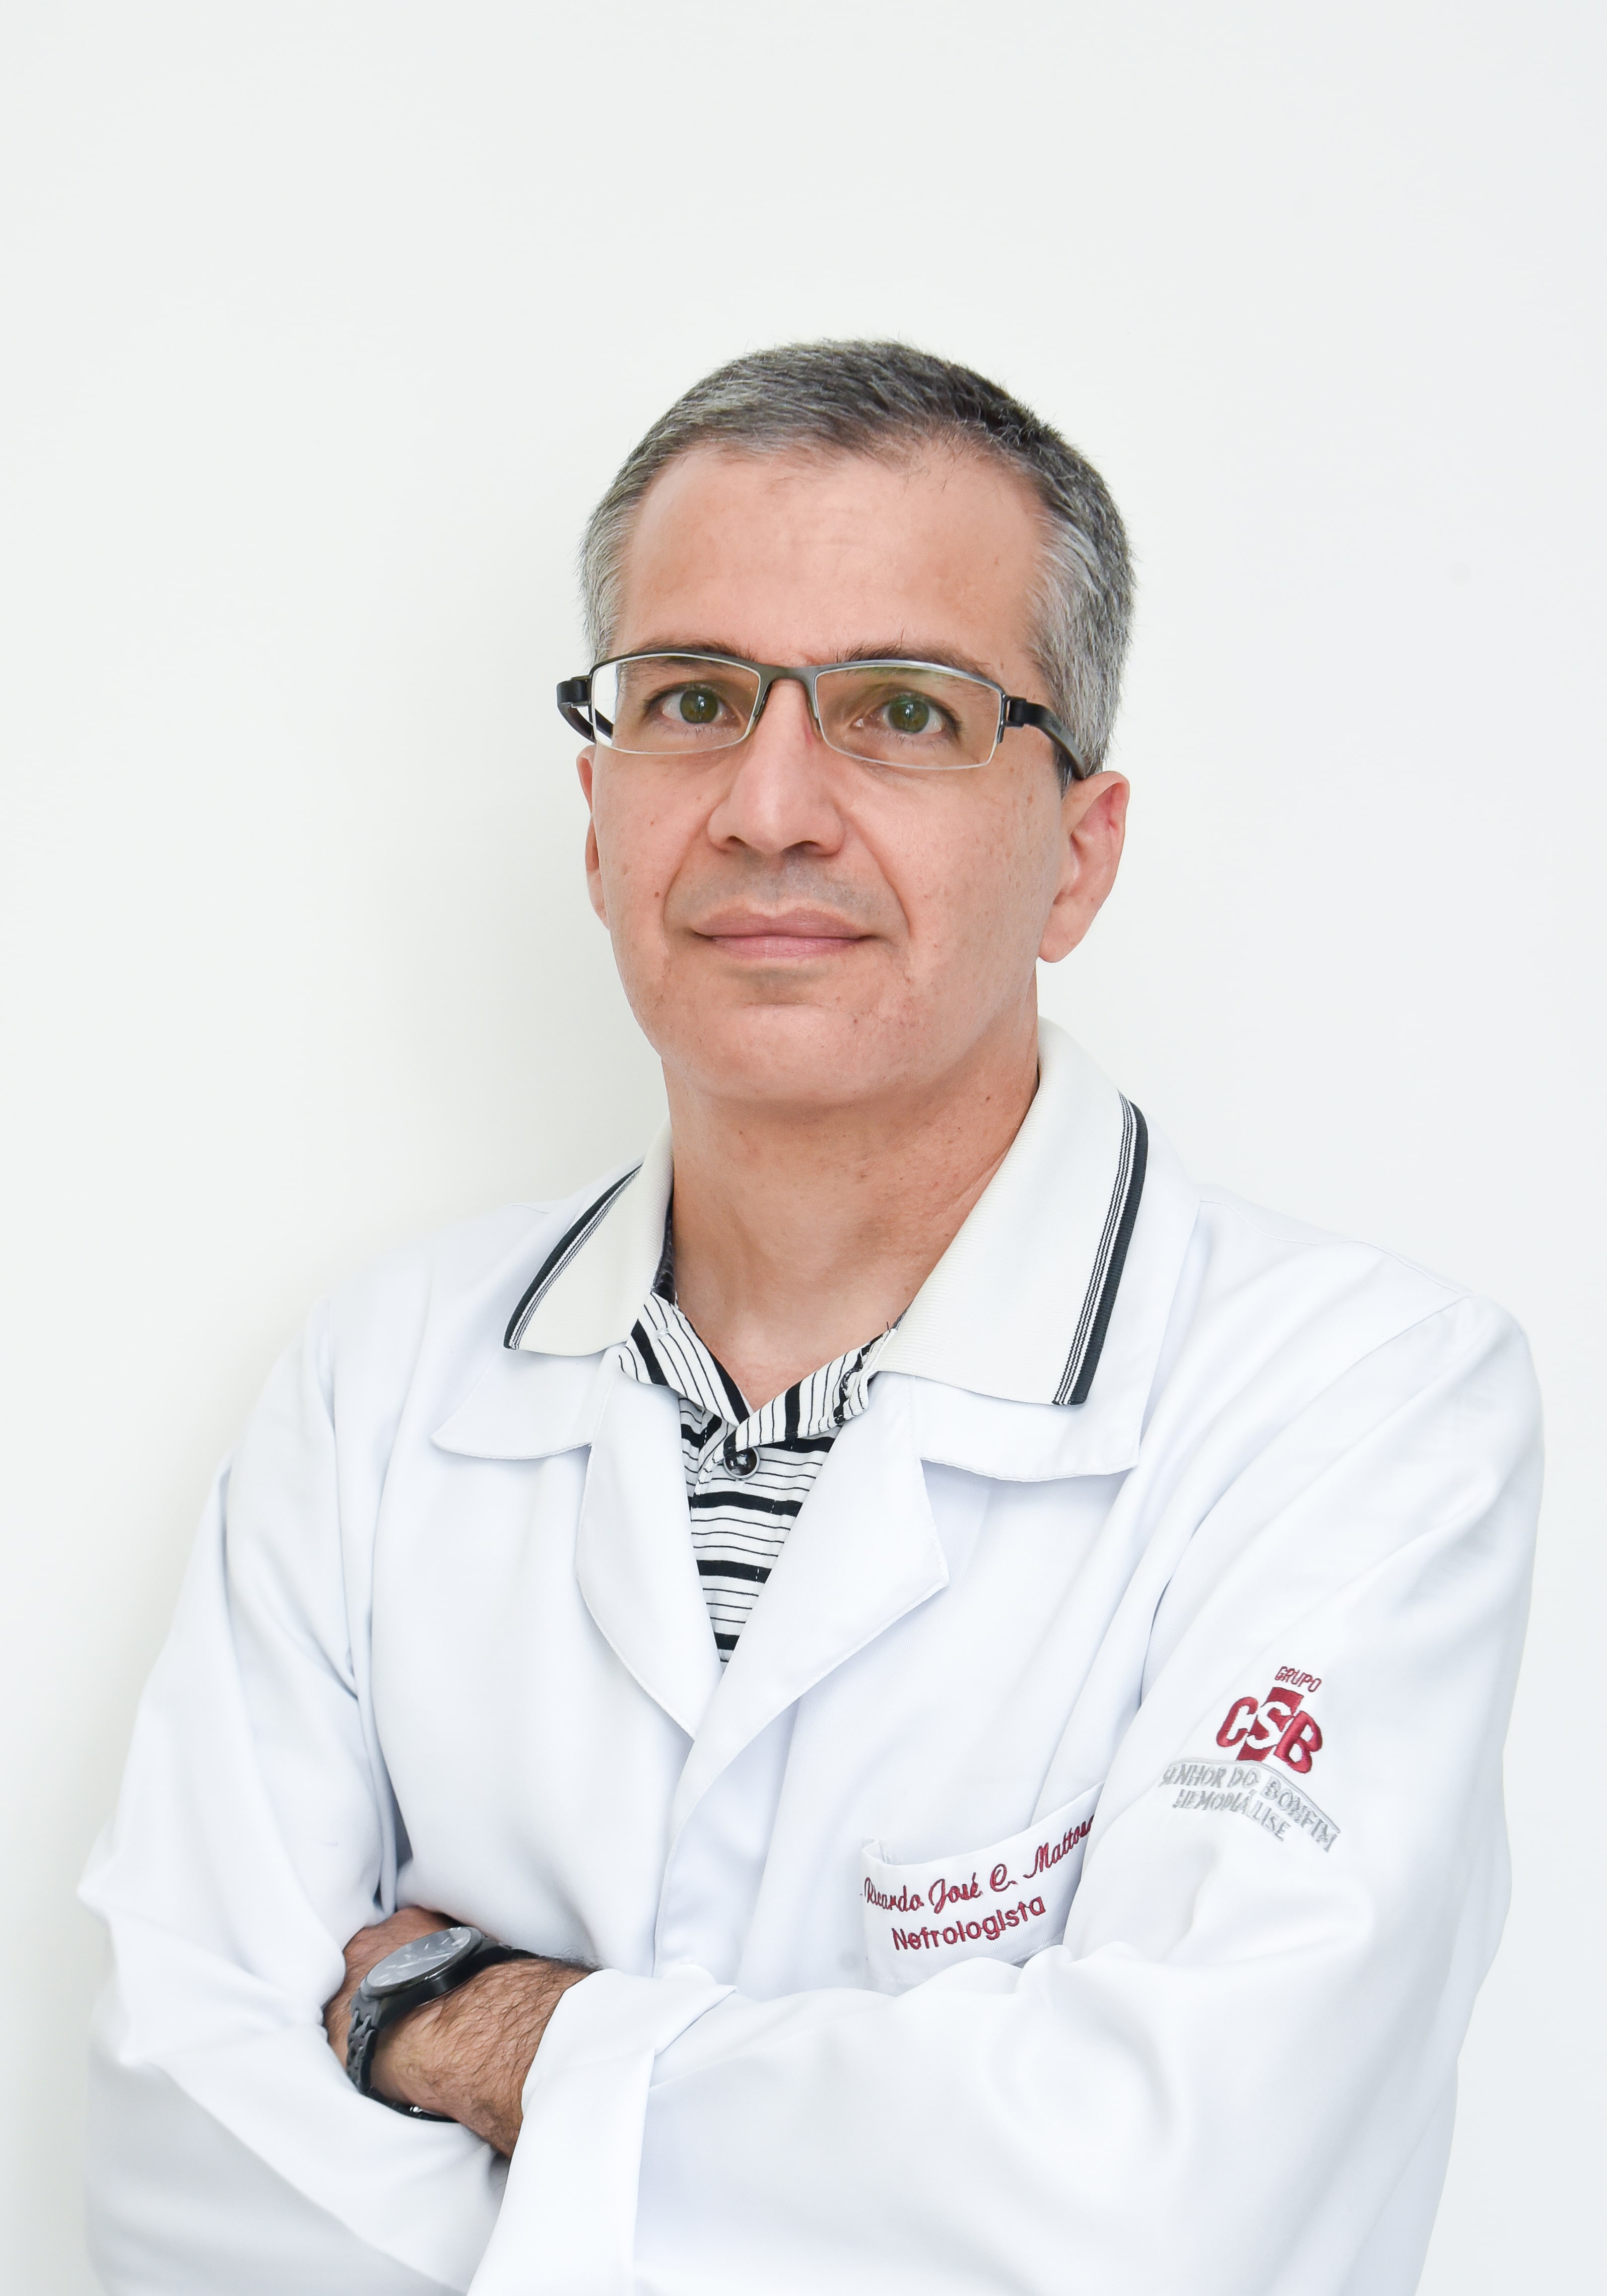 Dr. Ricardo José Costa Mattoso